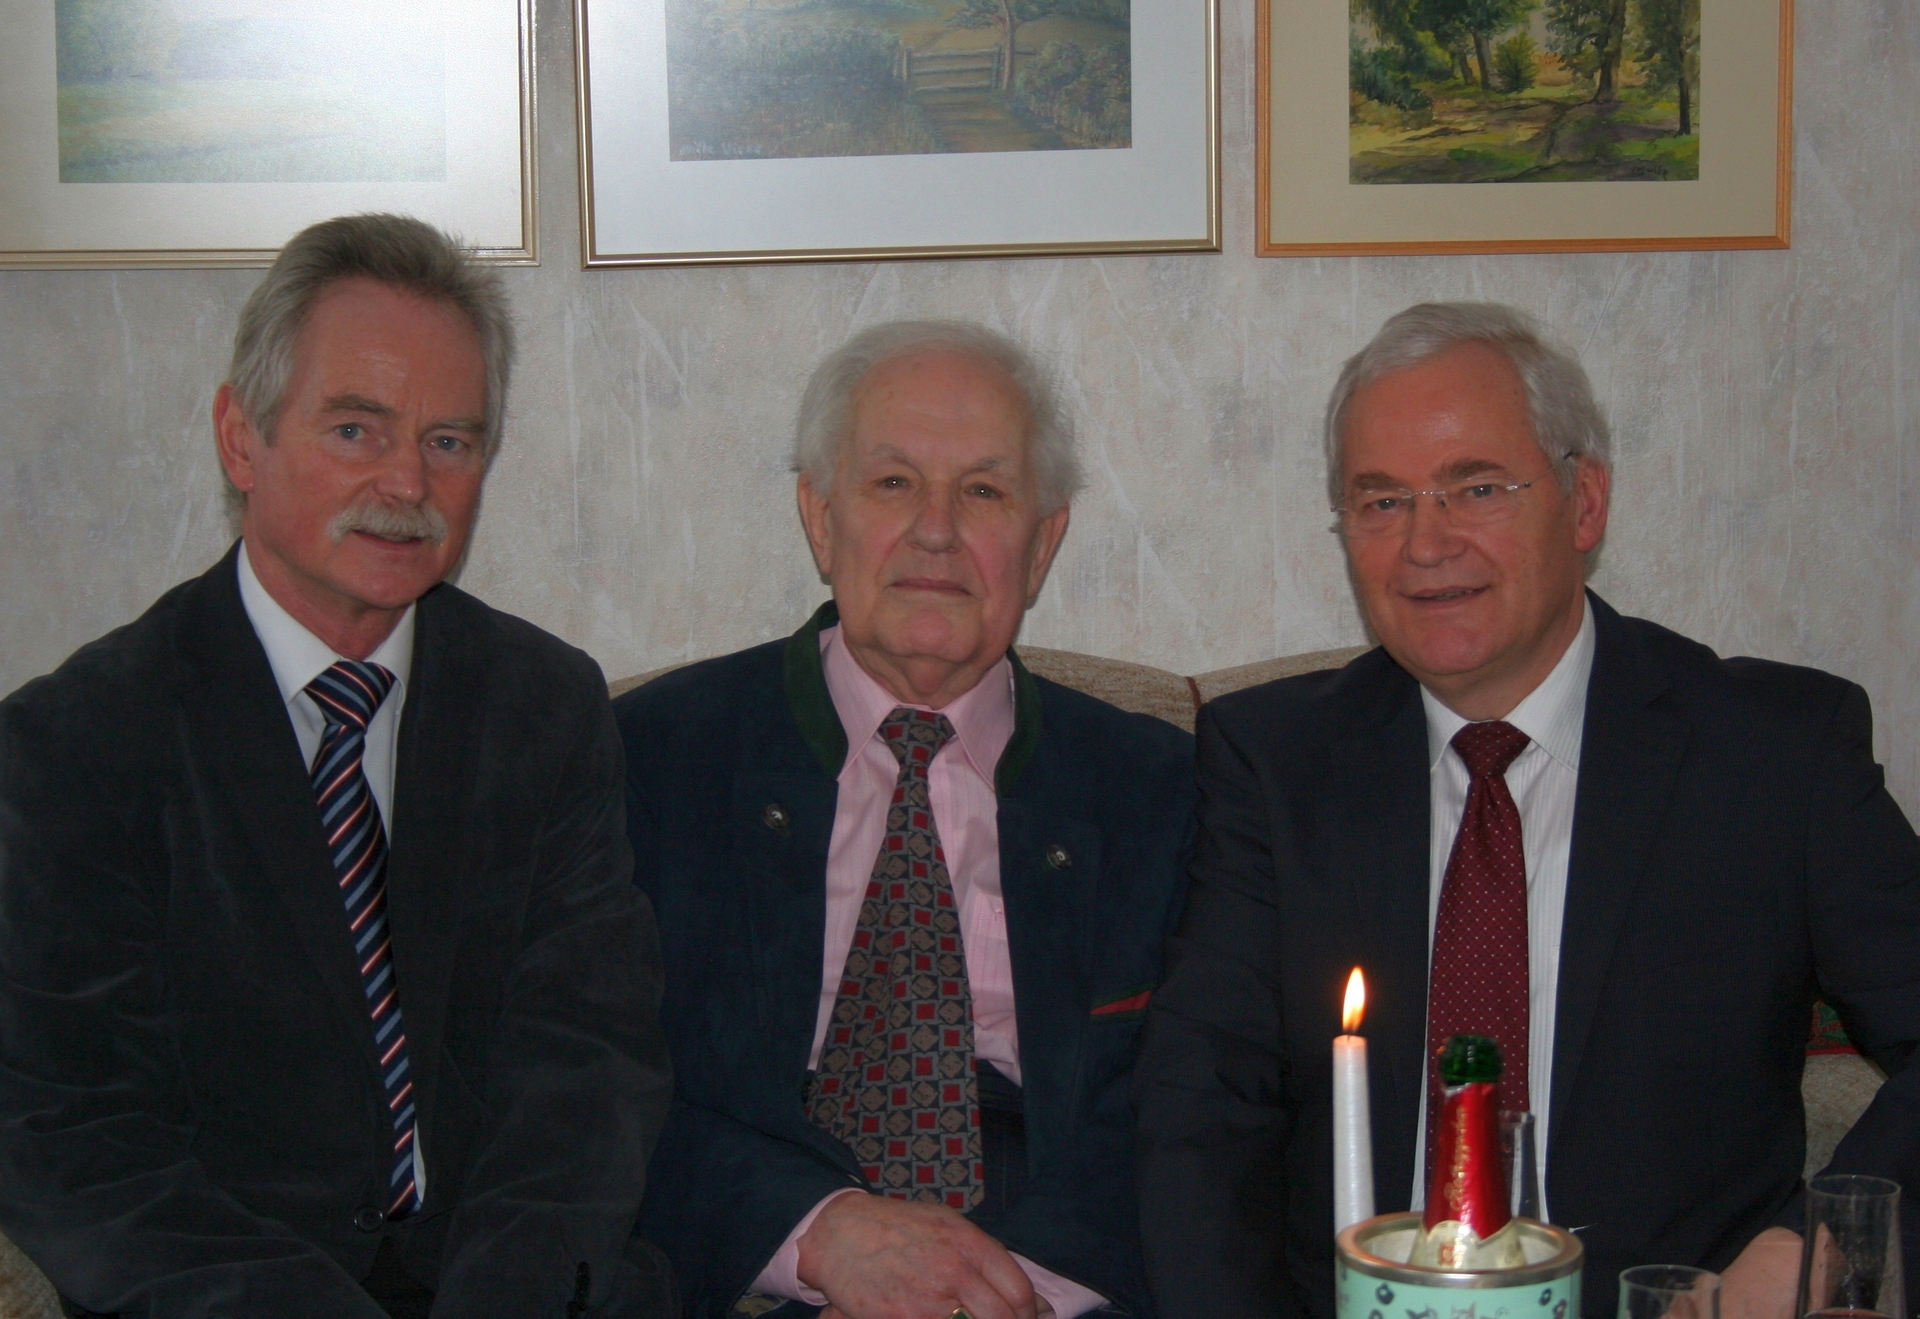 Bild: 22.02.2016 - Bürgermeister Dr. Michael Koch (li.) und Altbürgermeister Ernst Wellmer (re.) gratulieren dem Jubilar zum 85. Geburtstag